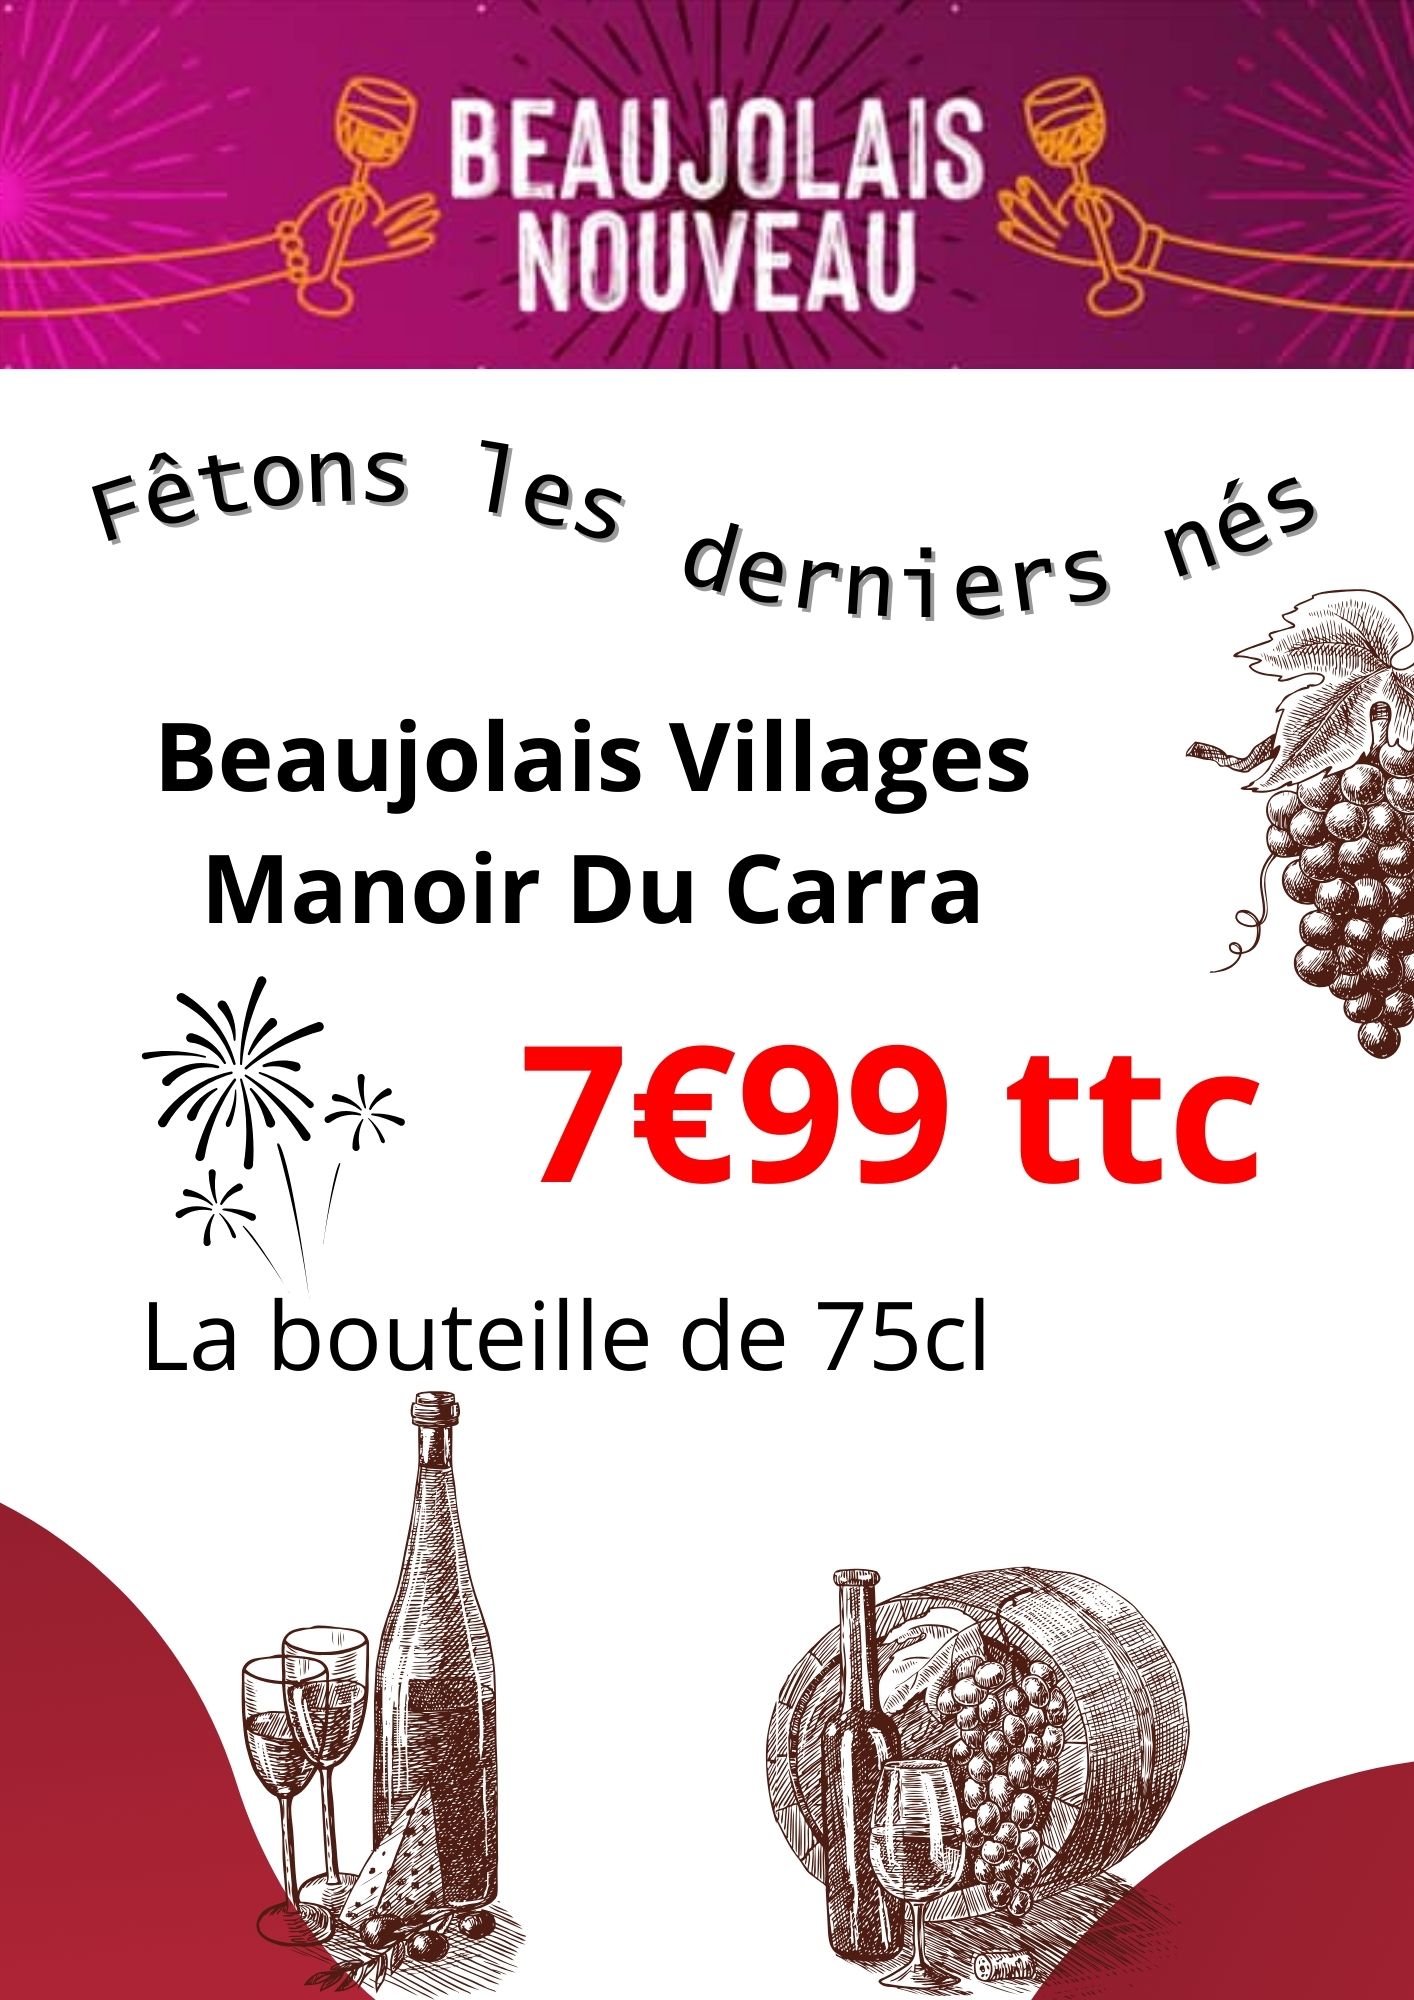 Vins primeurs - Beaujolais Nouveau - Caves du Tour'Billon novembre 2023 - 73330 Pont-de-Beauvoisin